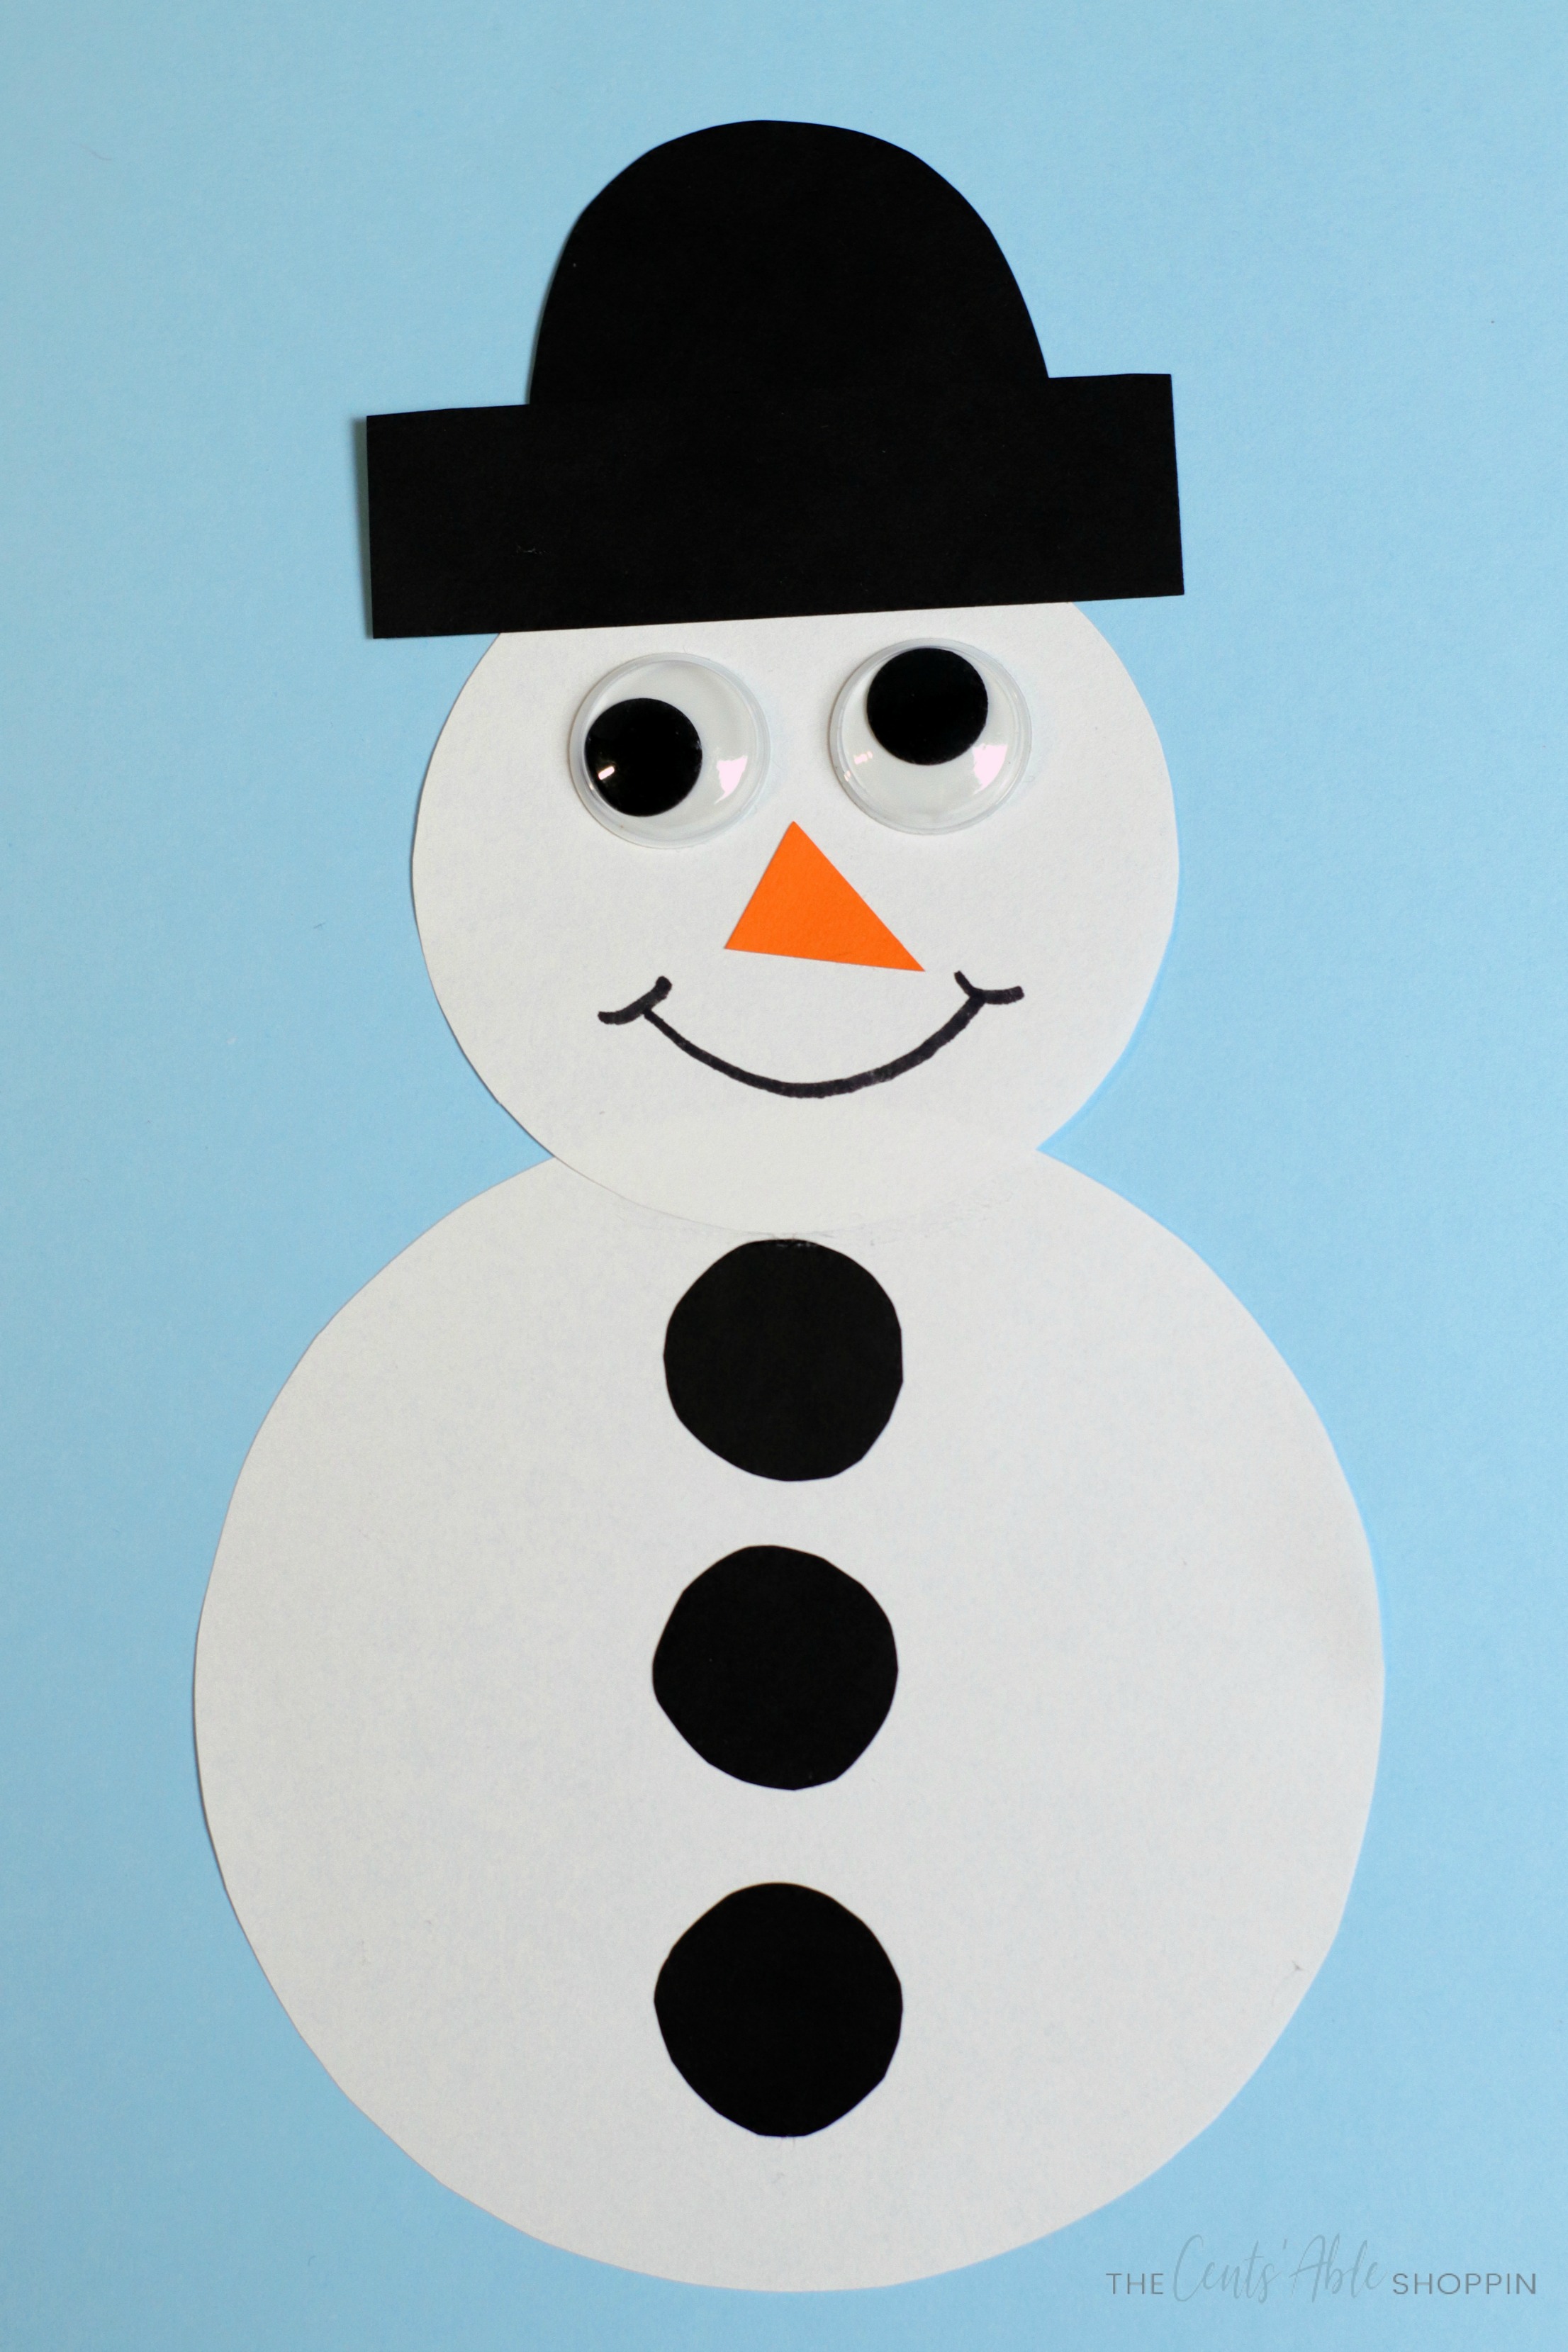 making a snowman craft